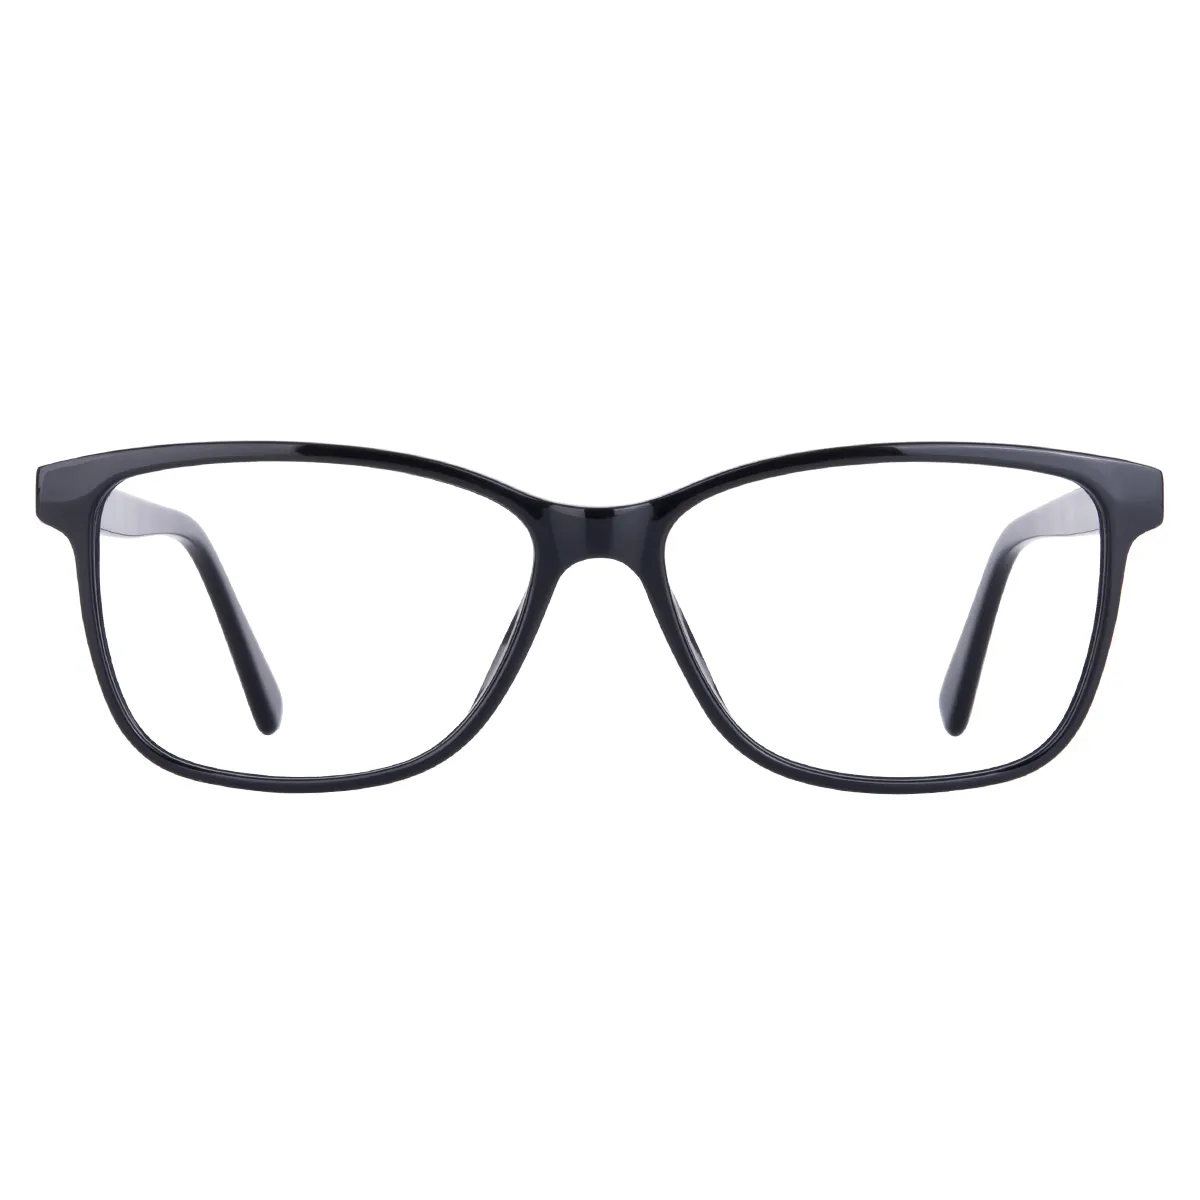 Shu - Square Black Glasses for Men & Women